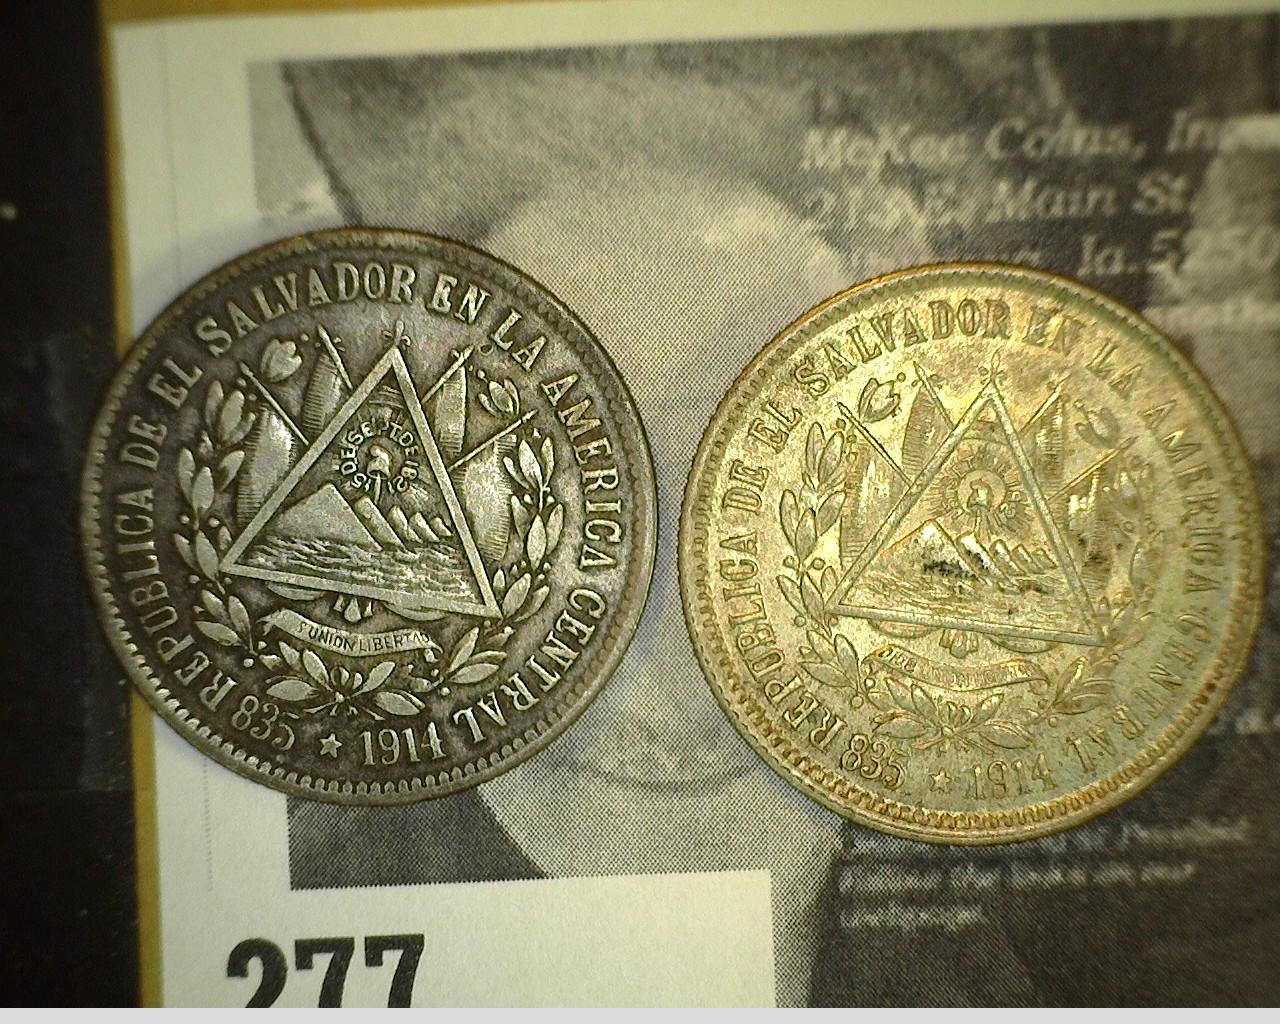 (2) 1914 El Salvador Twenty-five Centavos Silver Coins. EF & Uncirculated. Both from the personal co